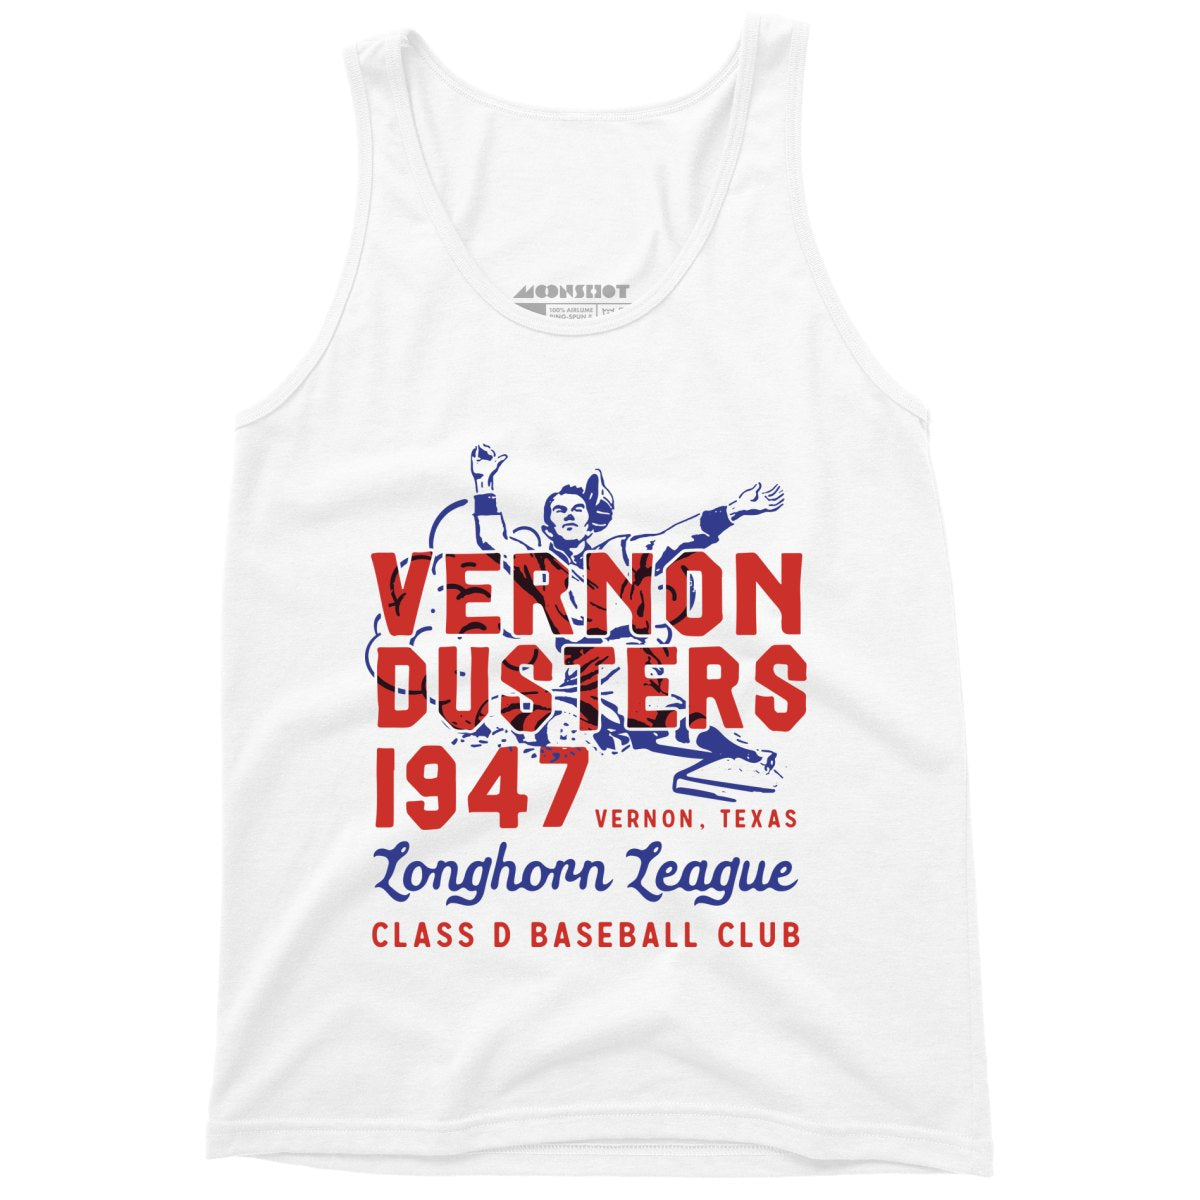 Vernon Dusters - Texas - Vintage Defunct Baseball Teams - Unisex Tank Top